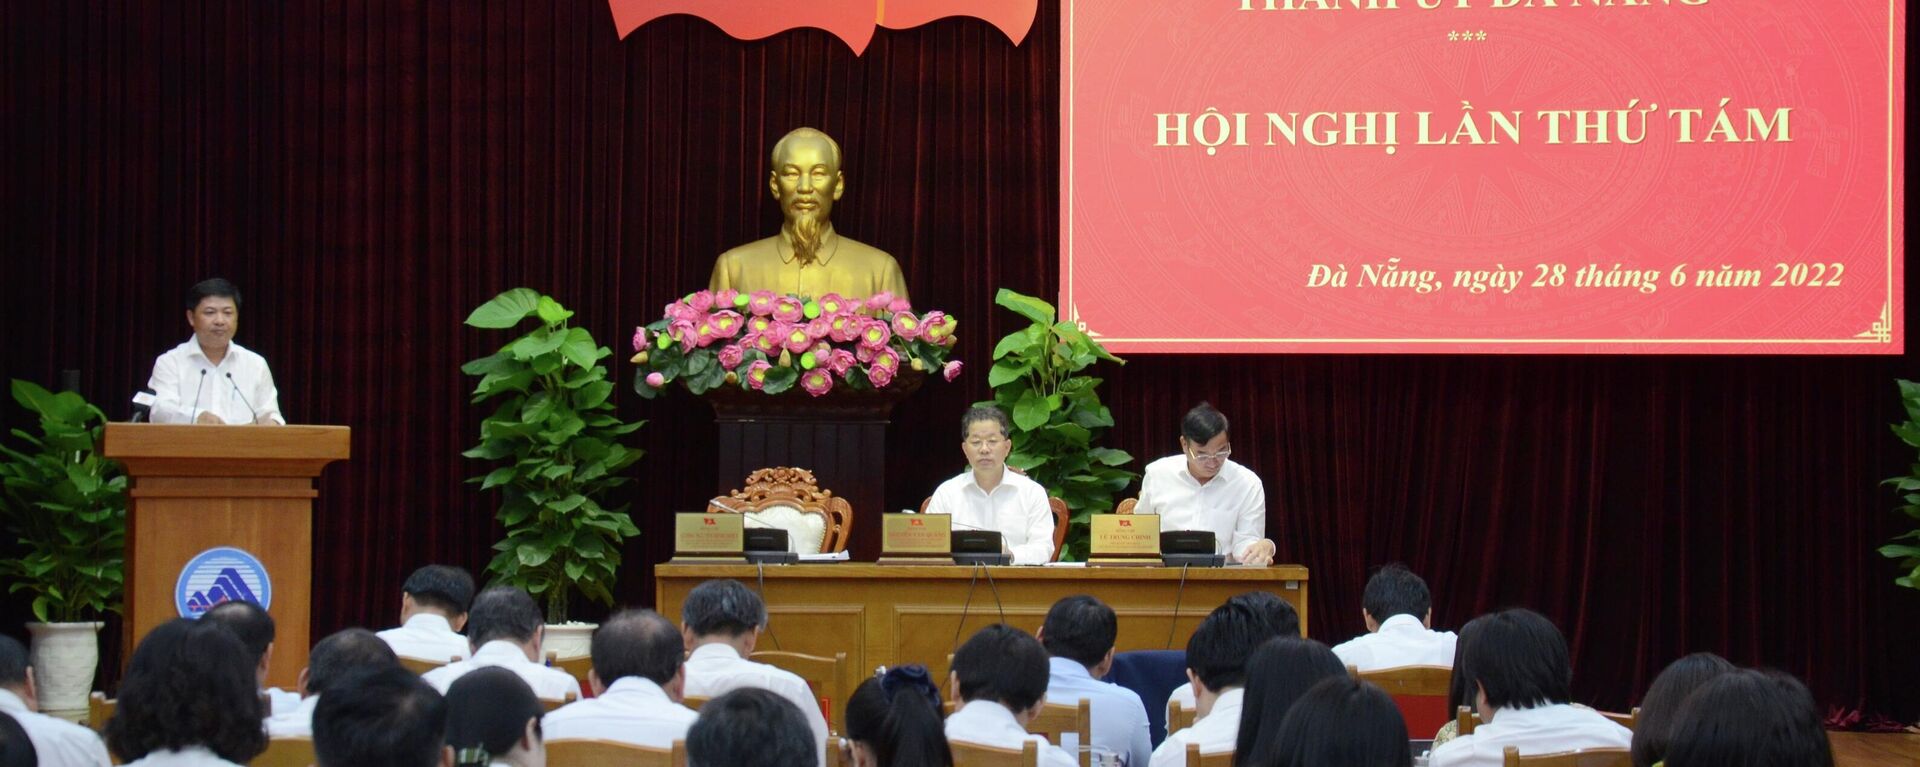 Khai mạc Hội nghị lần thứ 8 Ban chấp hành Đảng bộ thành phố Đà Nẵng - Sputnik Việt Nam, 1920, 28.06.2022